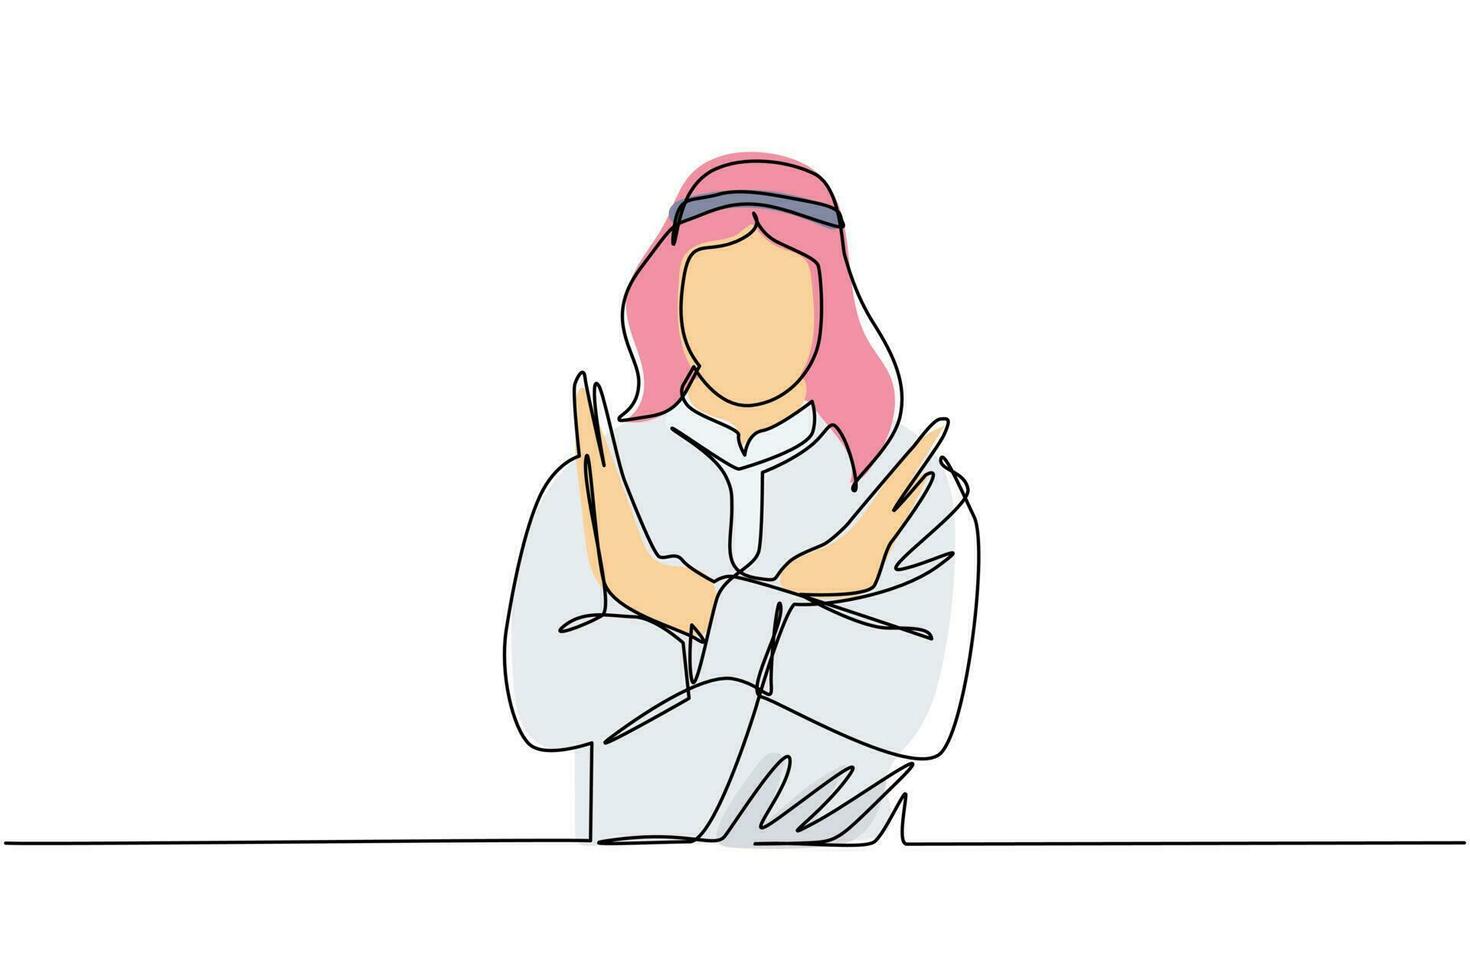 una linea continua che disegna un giovane arabo che incrocia le braccia e non dice alcun gesto. persona che fa la forma x, il segnale di stop con le mani e l'espressione negativa. illustrazione grafica vettoriale di disegno a linea singola